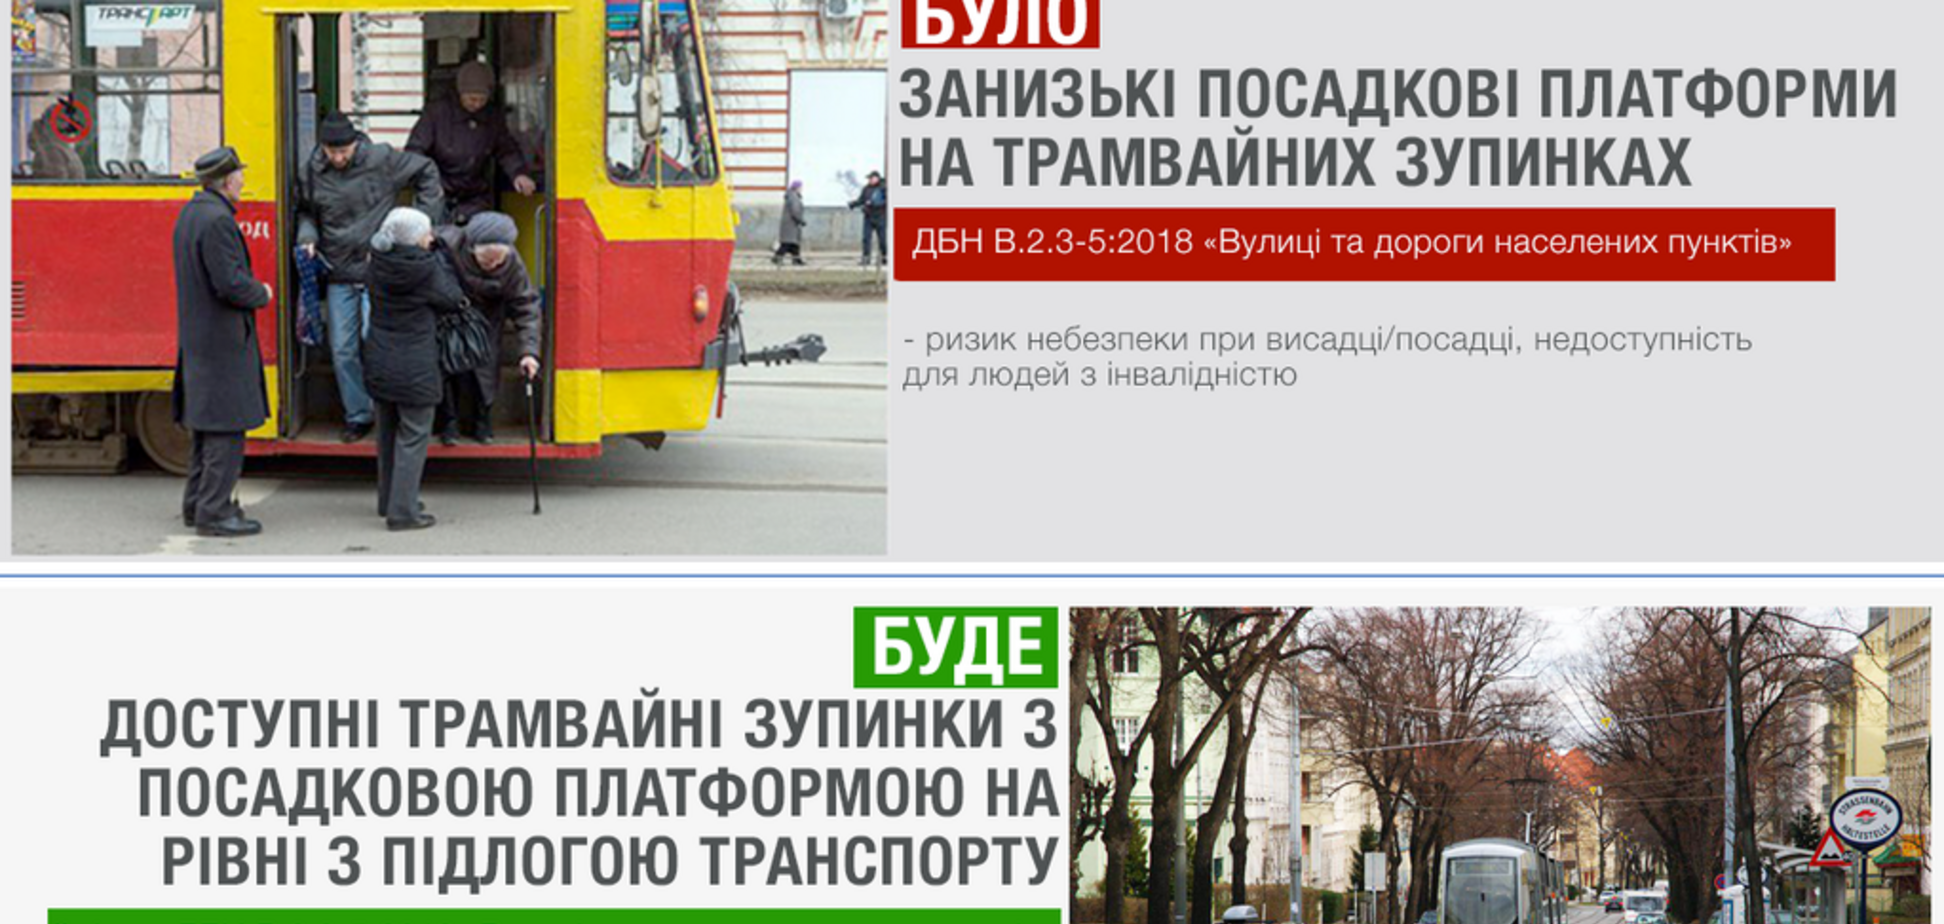 Безопасные и удобные трамвайные остановки: возможно ли такое в Украине?